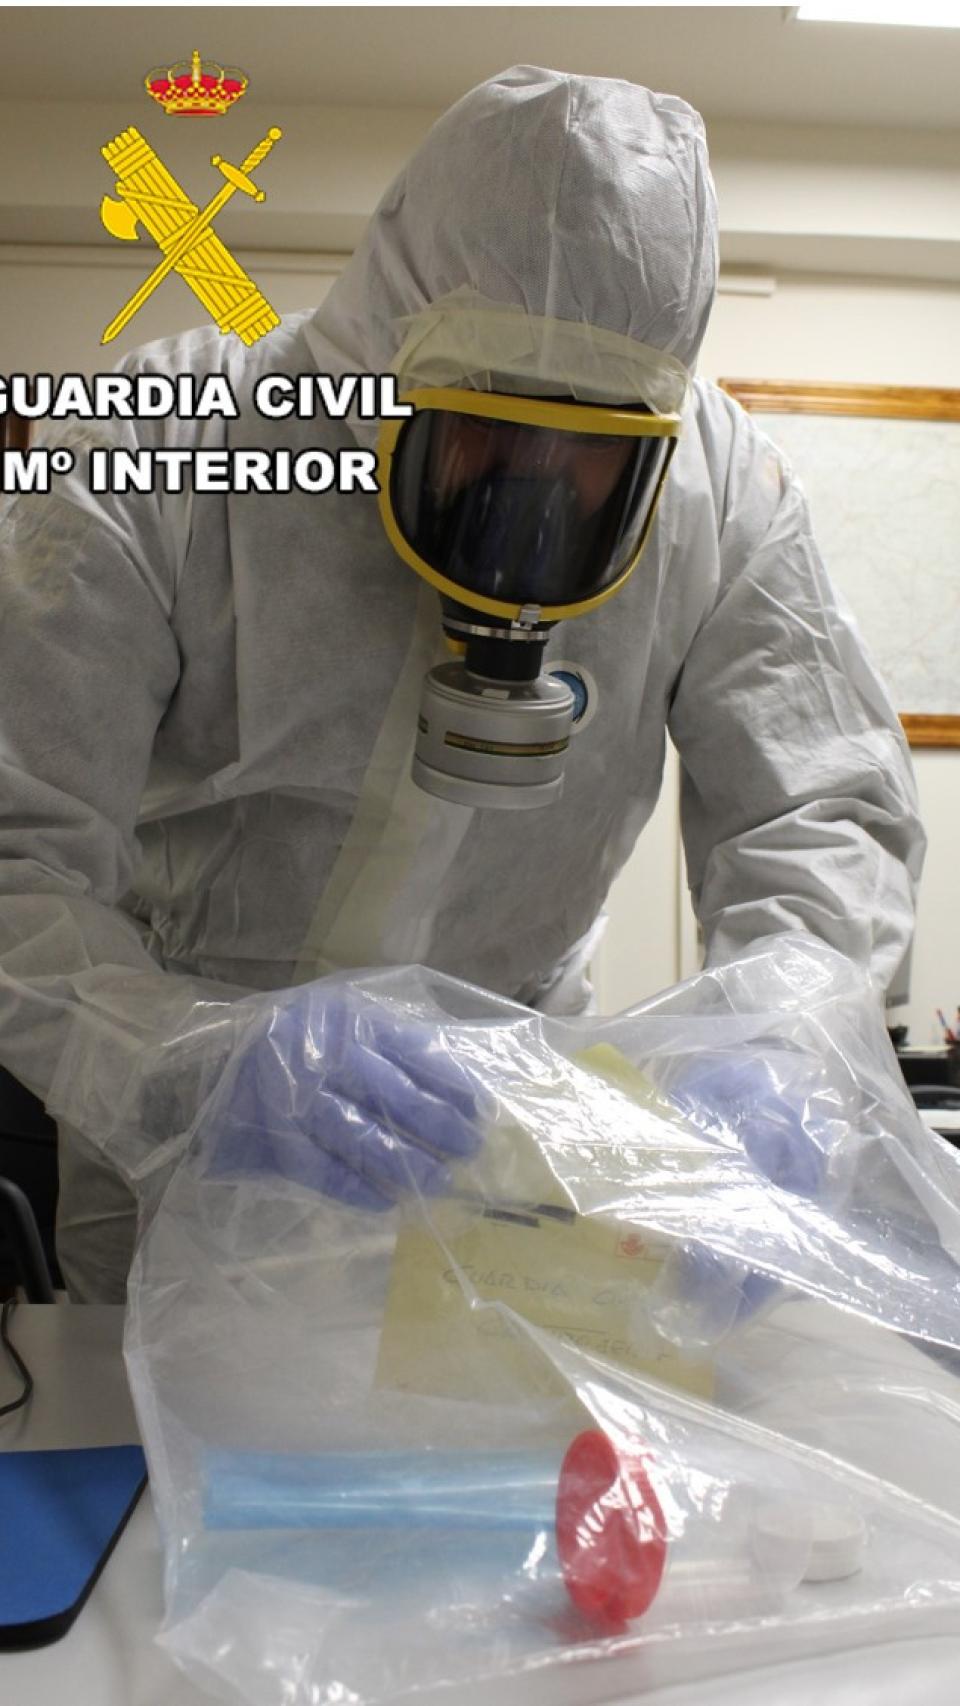 Un agente guarda el sobre con el posible ataque biológico en Burgos